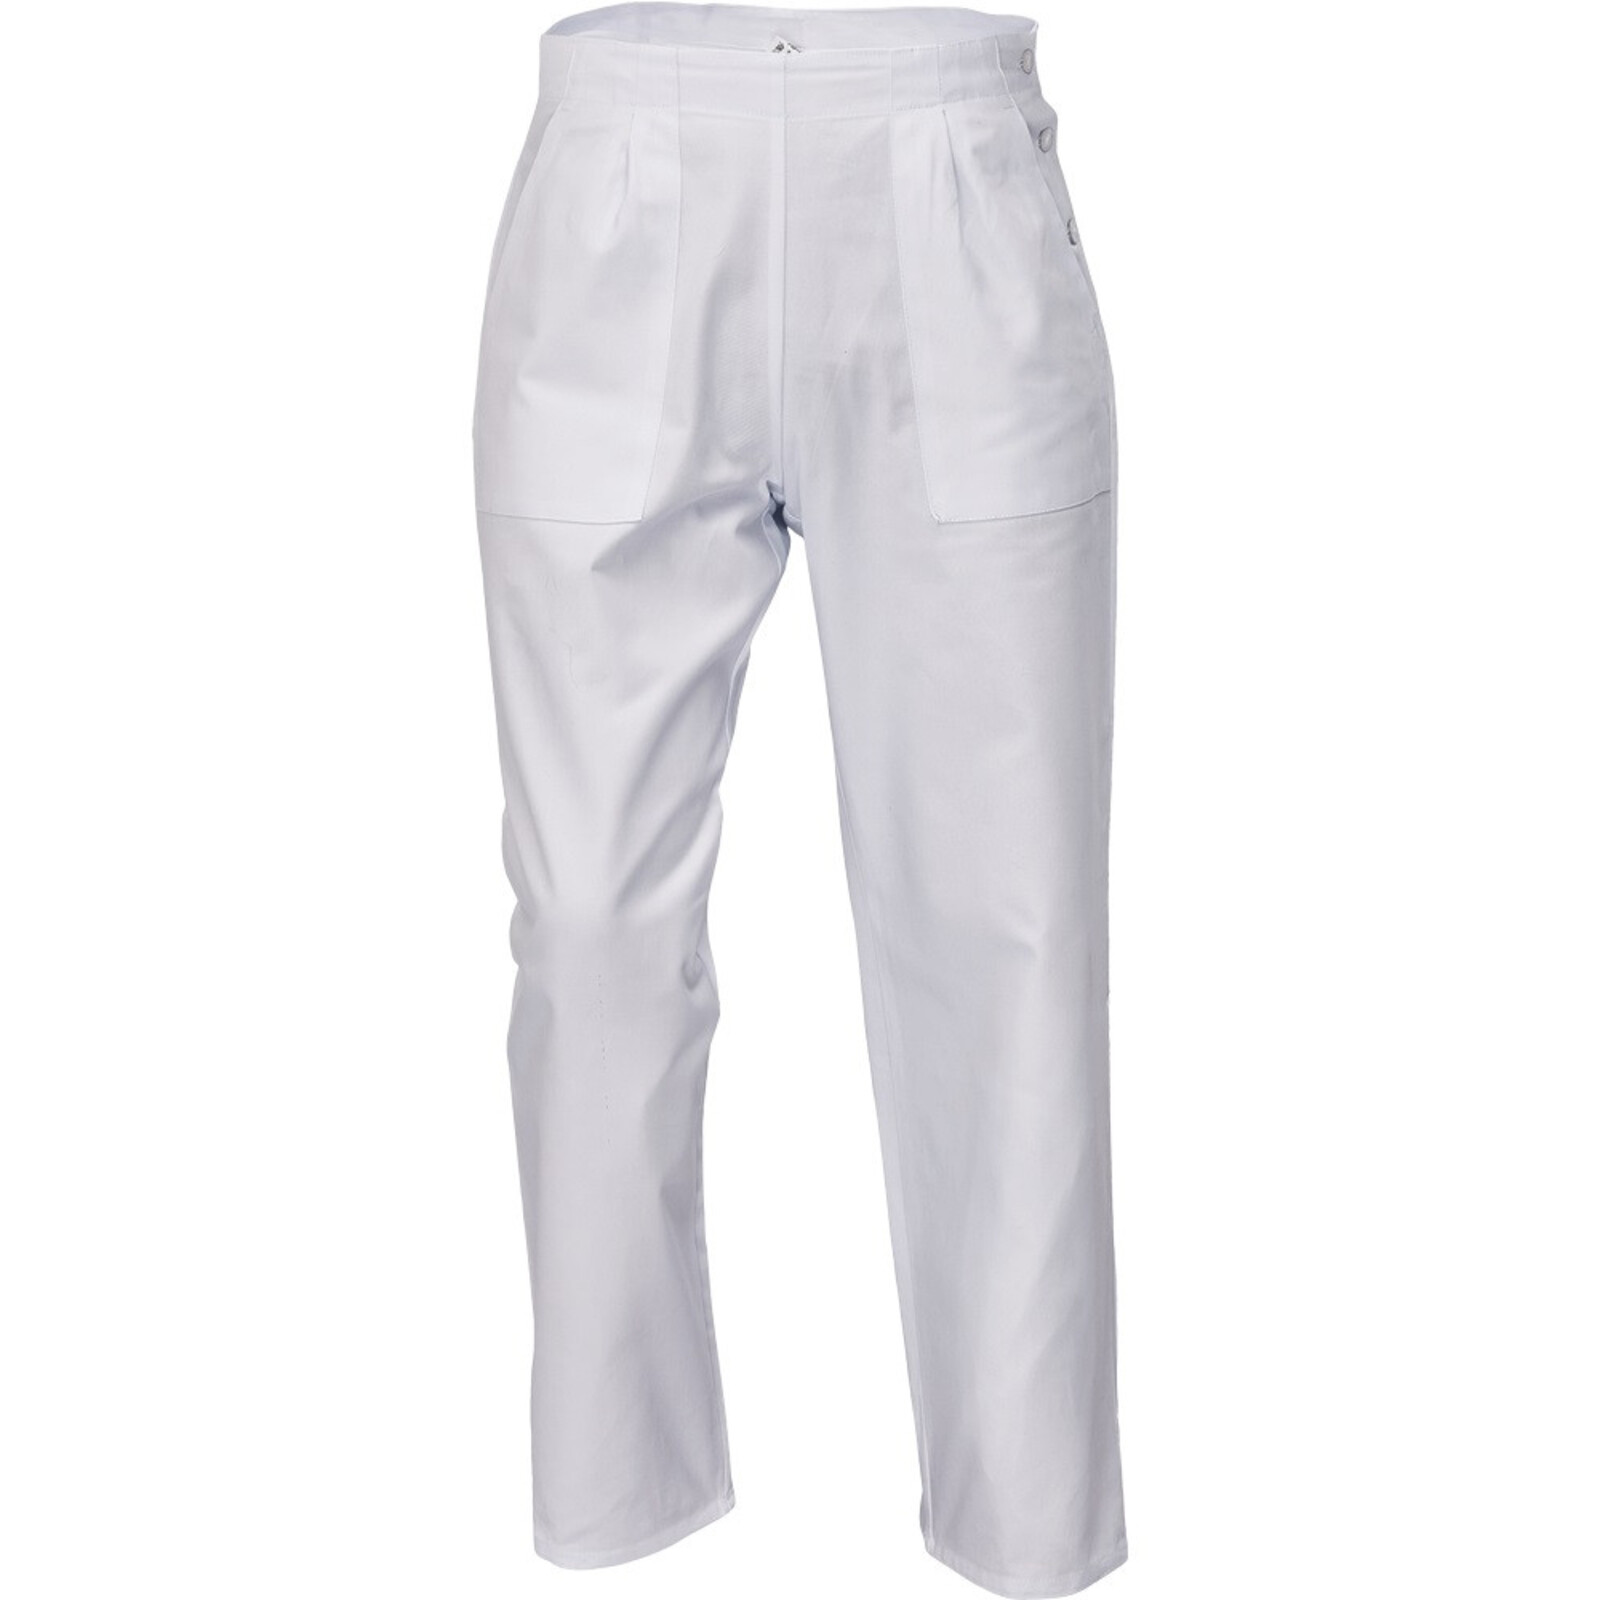 Dámske biele nohavice Apus Lady - veľkosť: 40